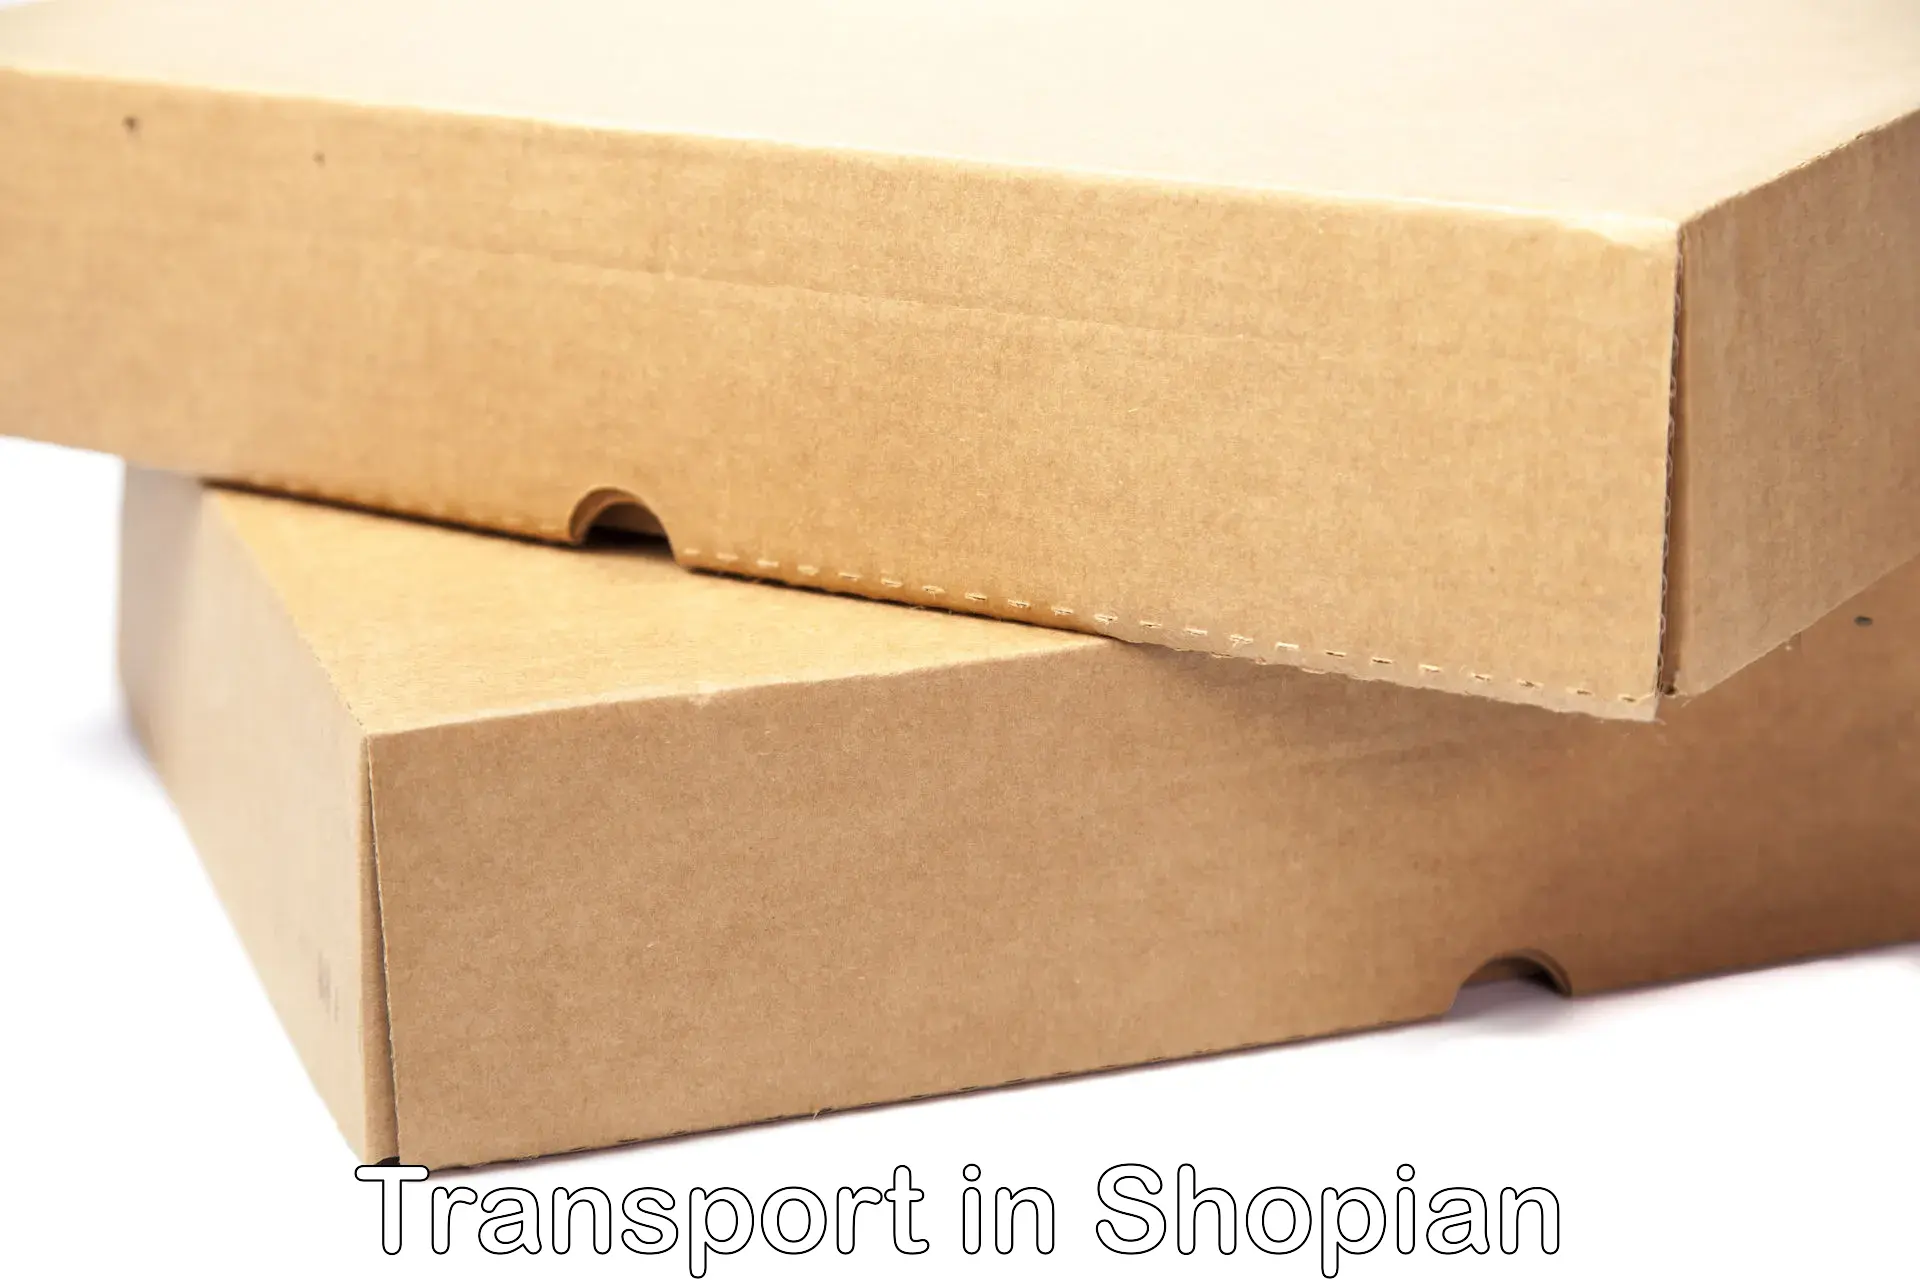 Two wheeler parcel service in Shopian